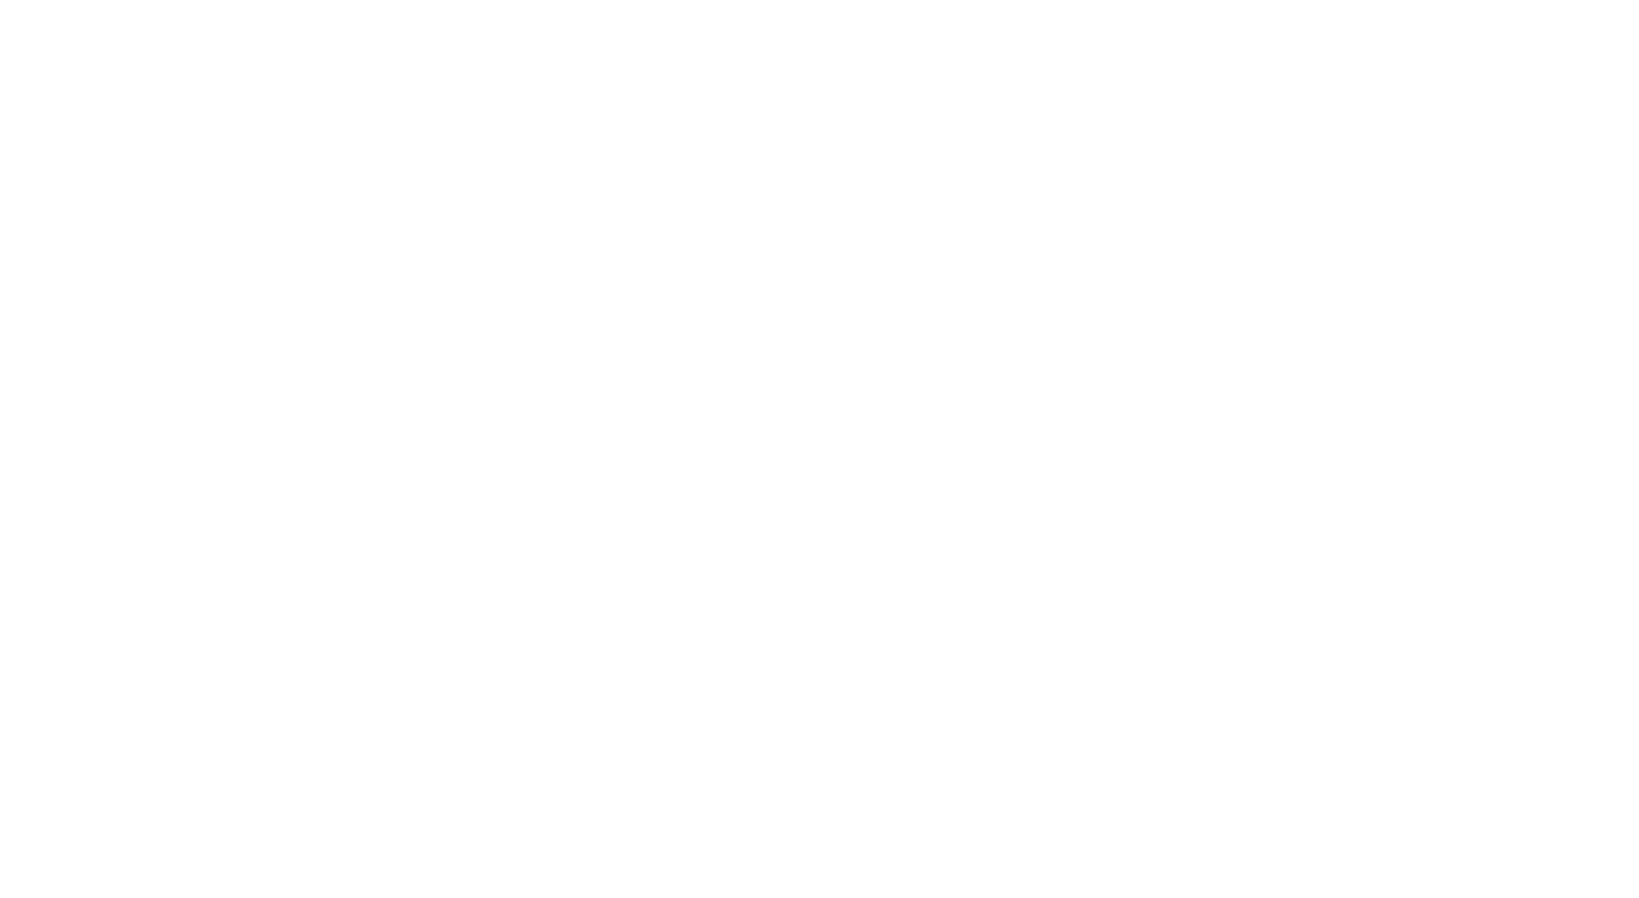 Кейс сервиса BRANDNATION - Ребрендинг и дизайн упаковки линейки товаров для дома. Брендинговое агентство BRANDNATION в Москве и Санкт-Петербурге. Услуги: разработка логотипа и фирменного стиля, дизайн упаковки, брендбук, ребрендинг, разработка сайта.